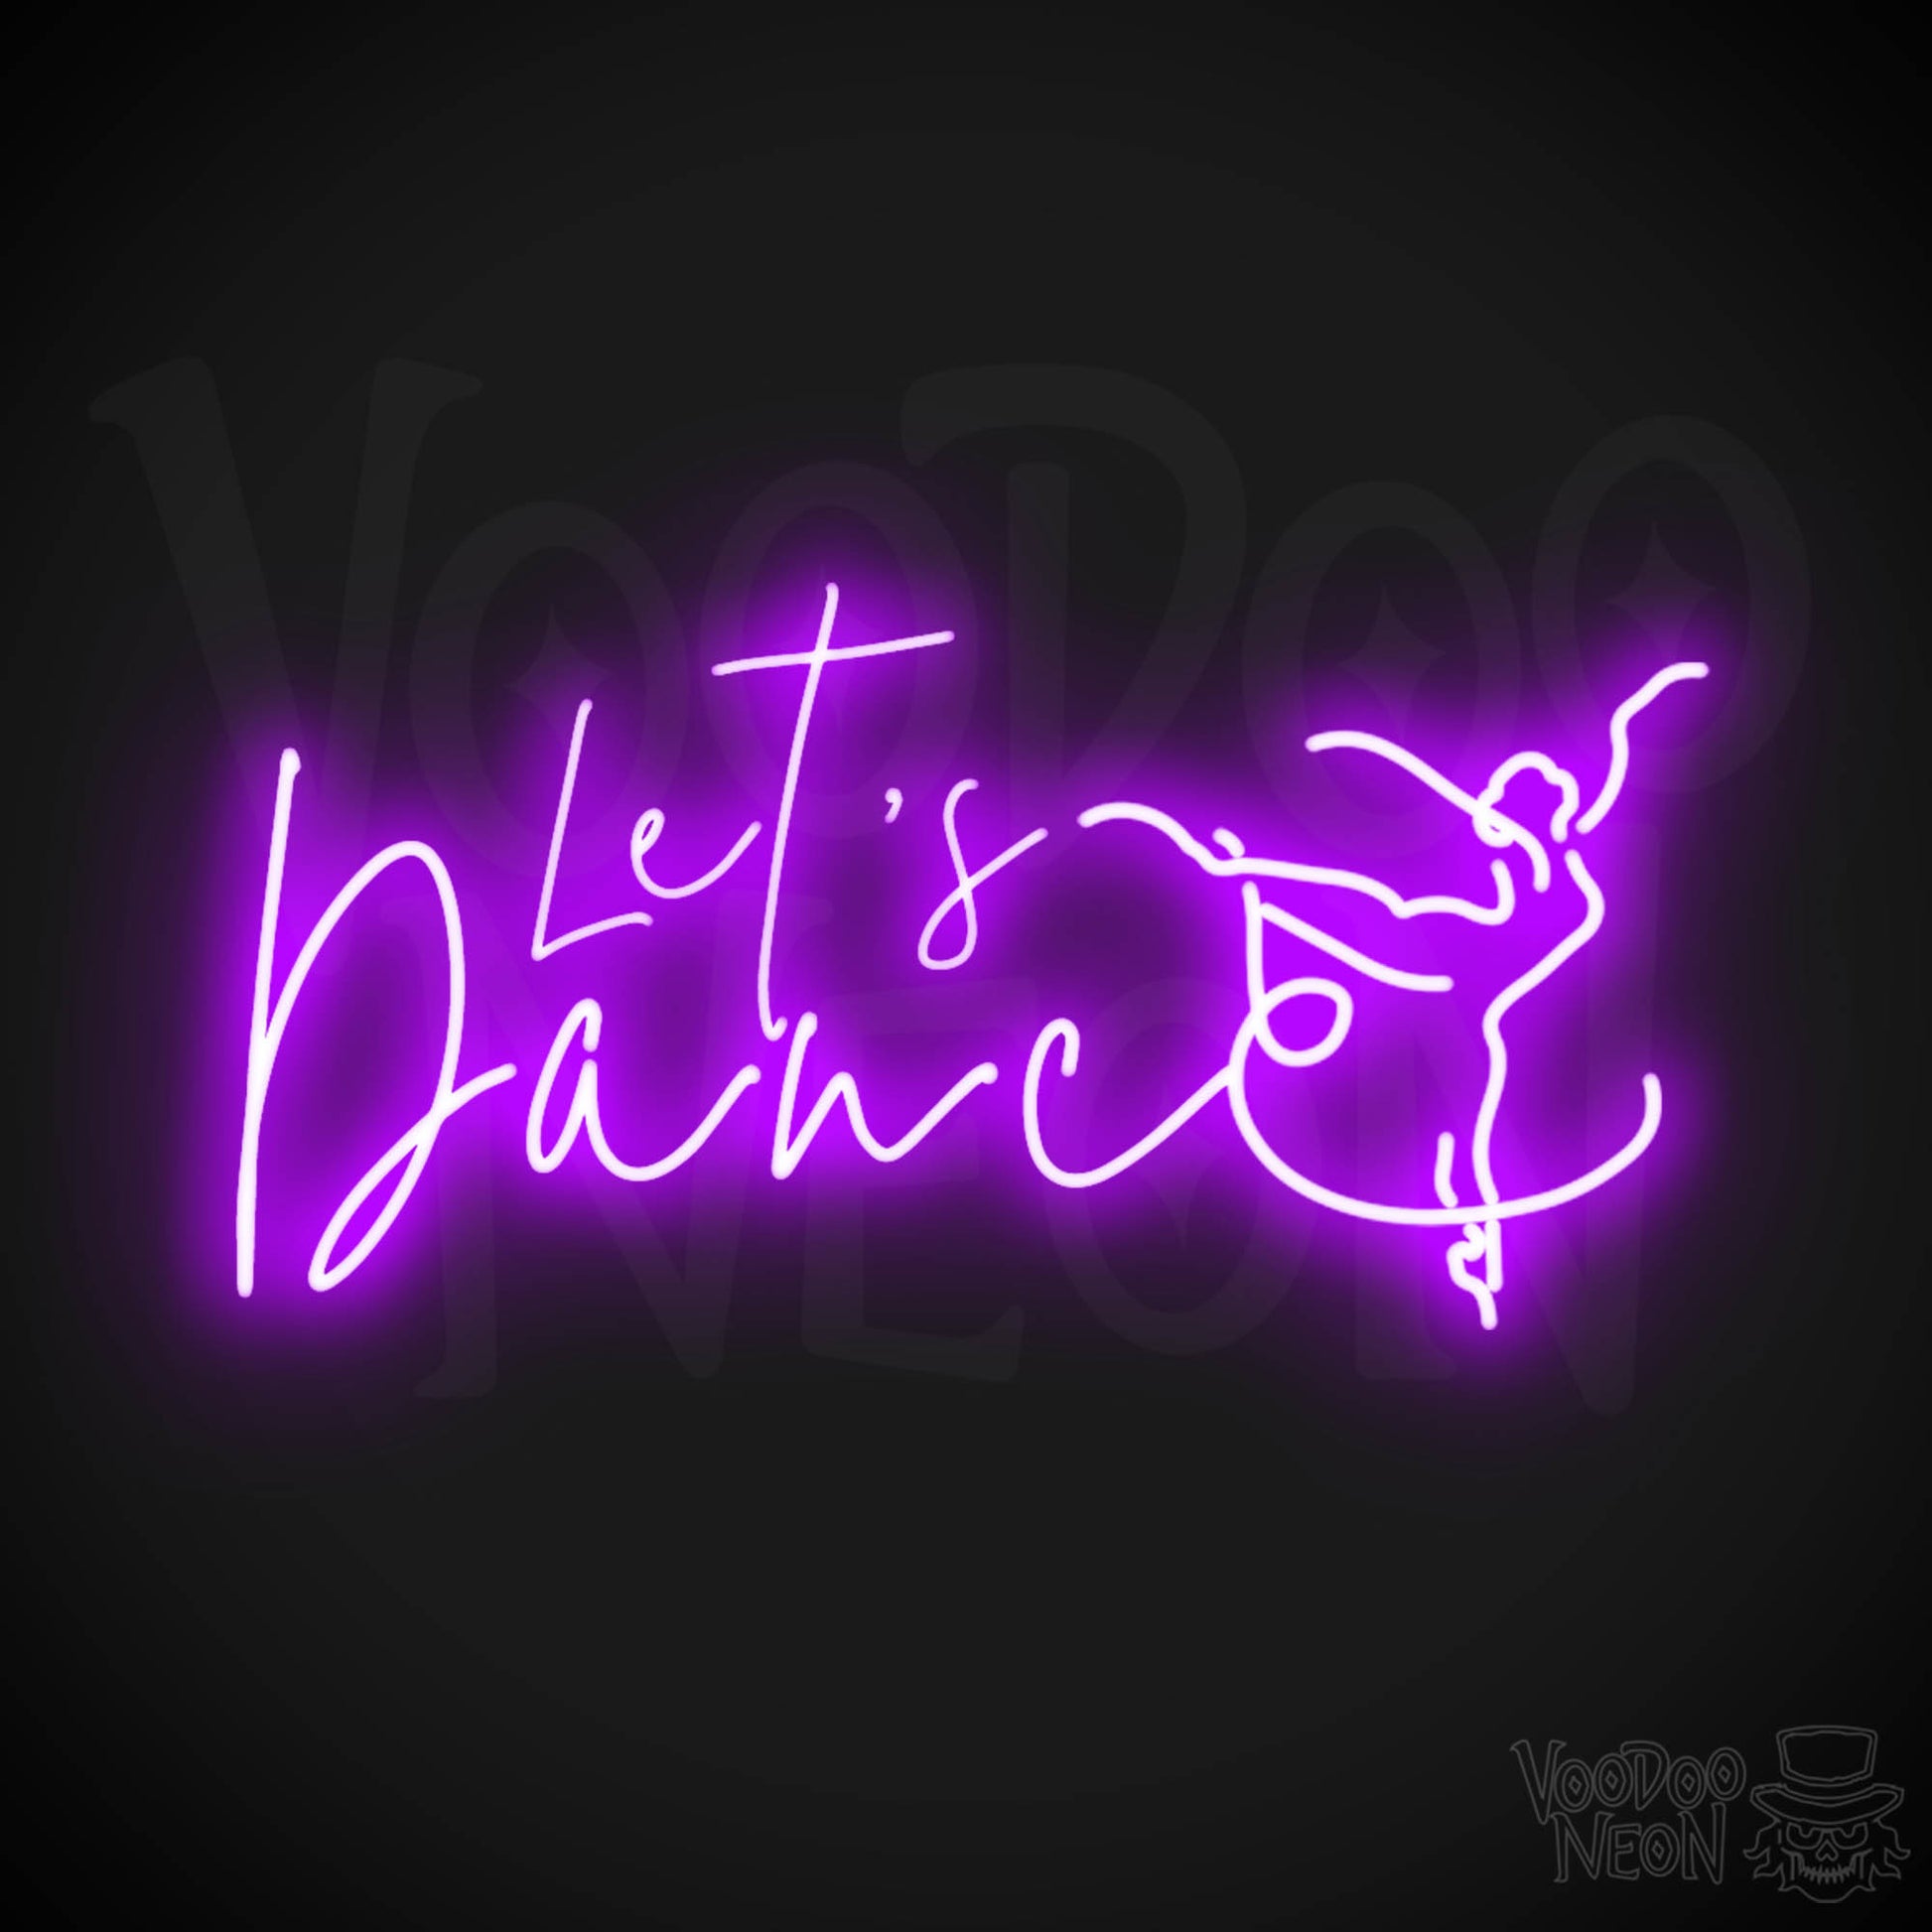 Lets Dance Neon Sign - Neon Lets Dance Sign - Color Purple